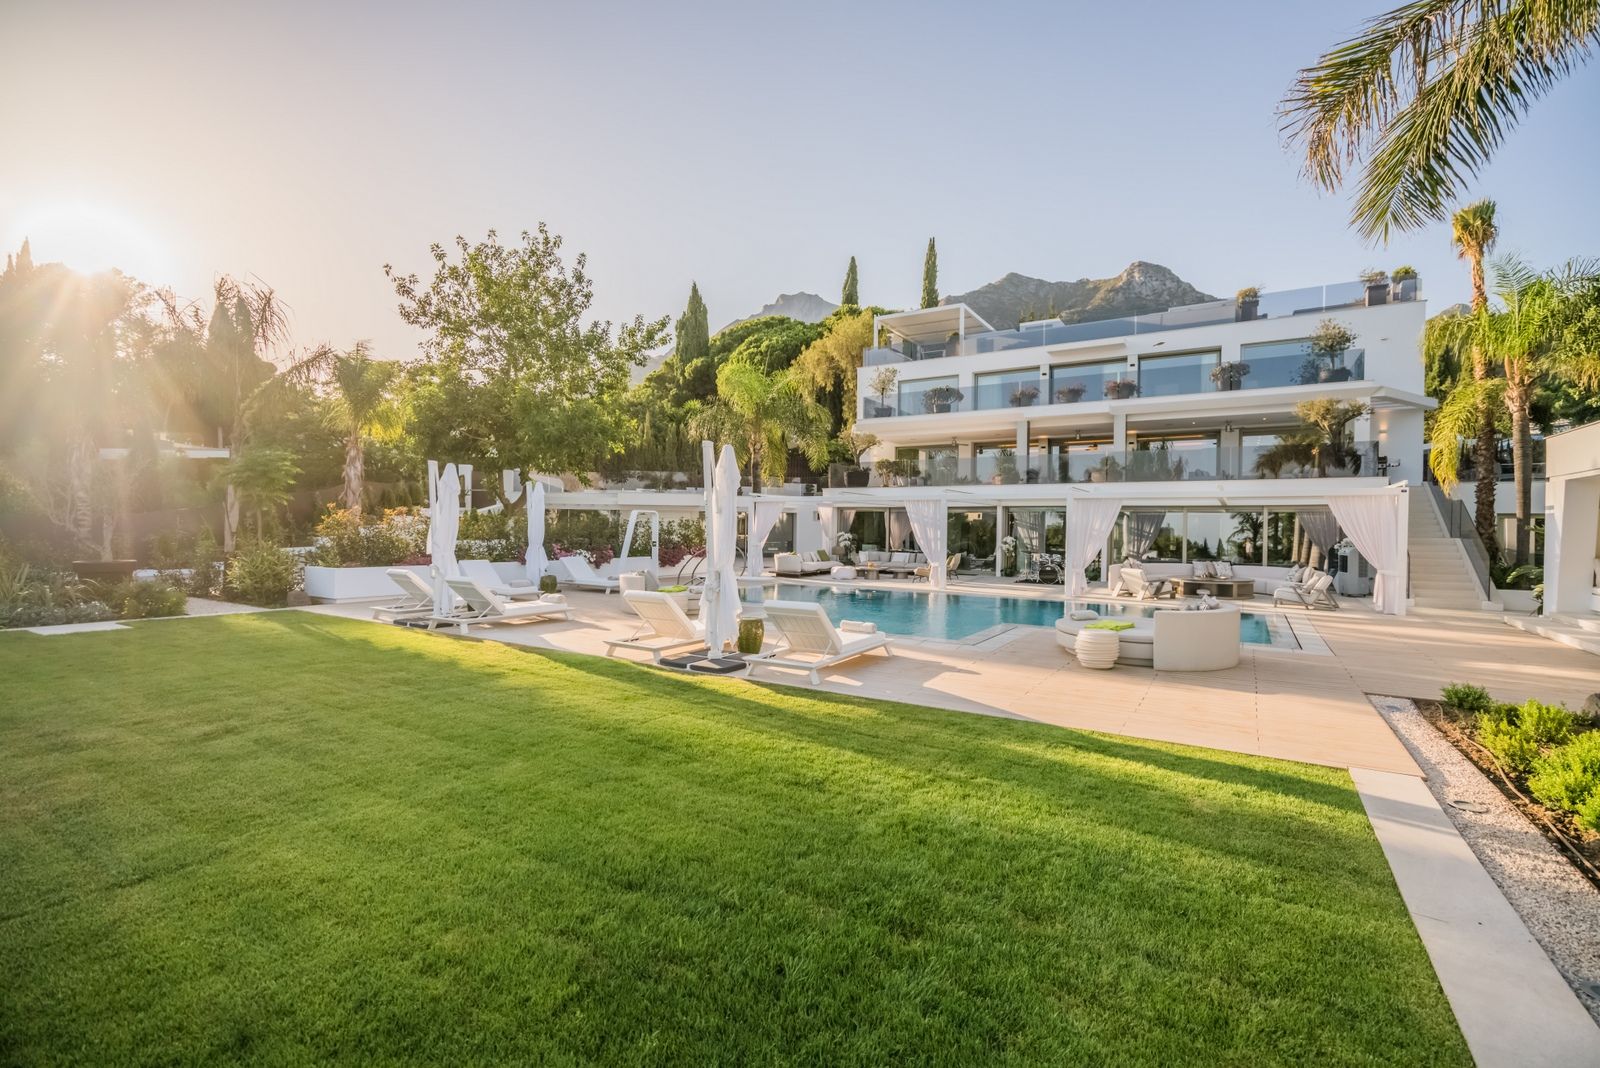 Portal Inmobiliario de Lujo en Sierra Blanca, presenta chalet de lujo venta en Milla de Oro, villa exclusiva para comprar y propiedades lujosas en venta en Marbella.